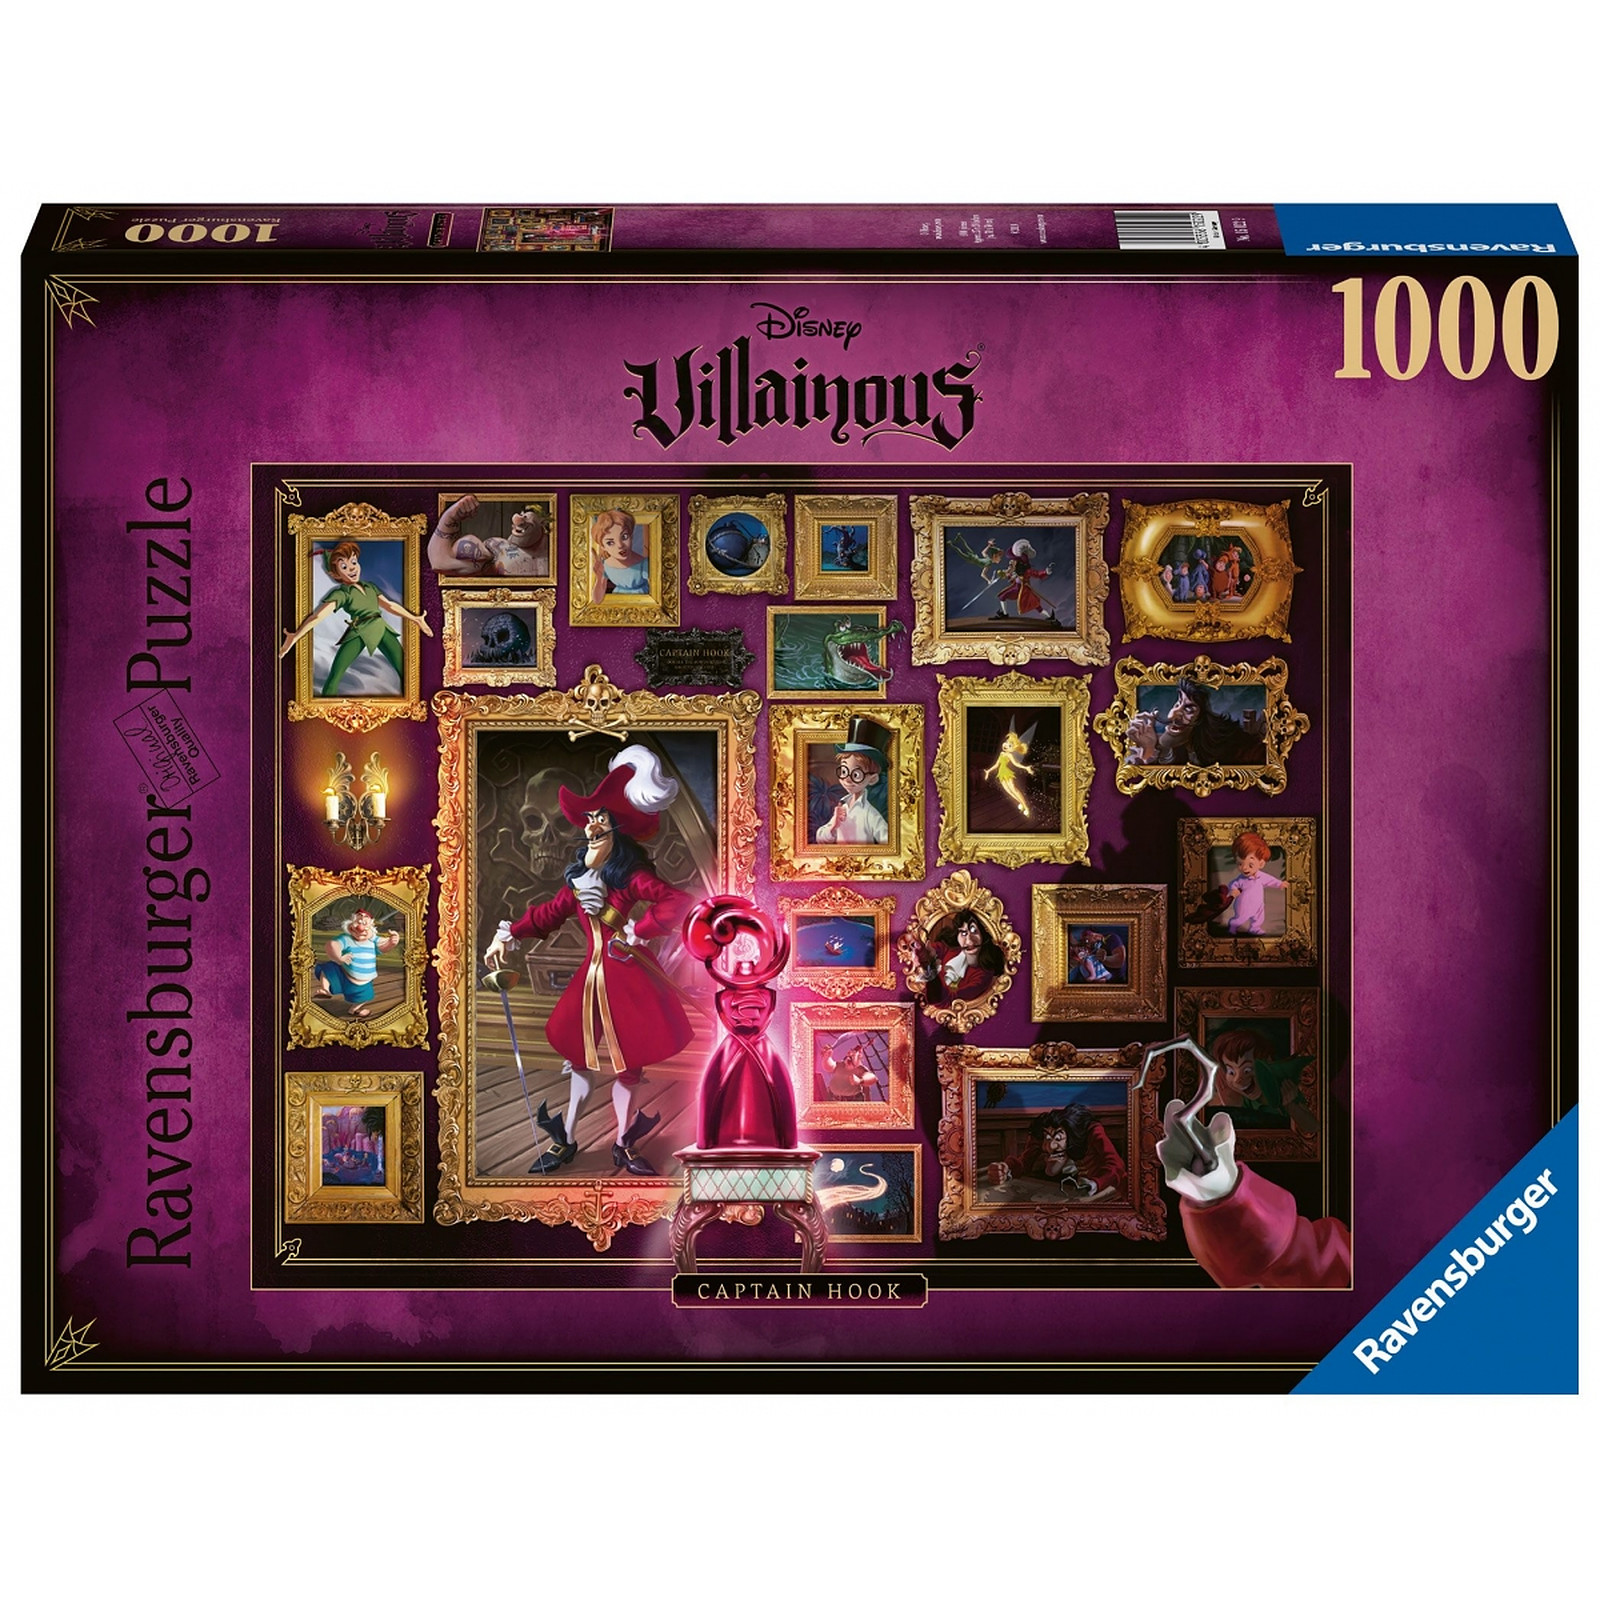 Villainous - Puzzle Capitaine Crochet (1000 pièces) - Puzzle Ravensburger